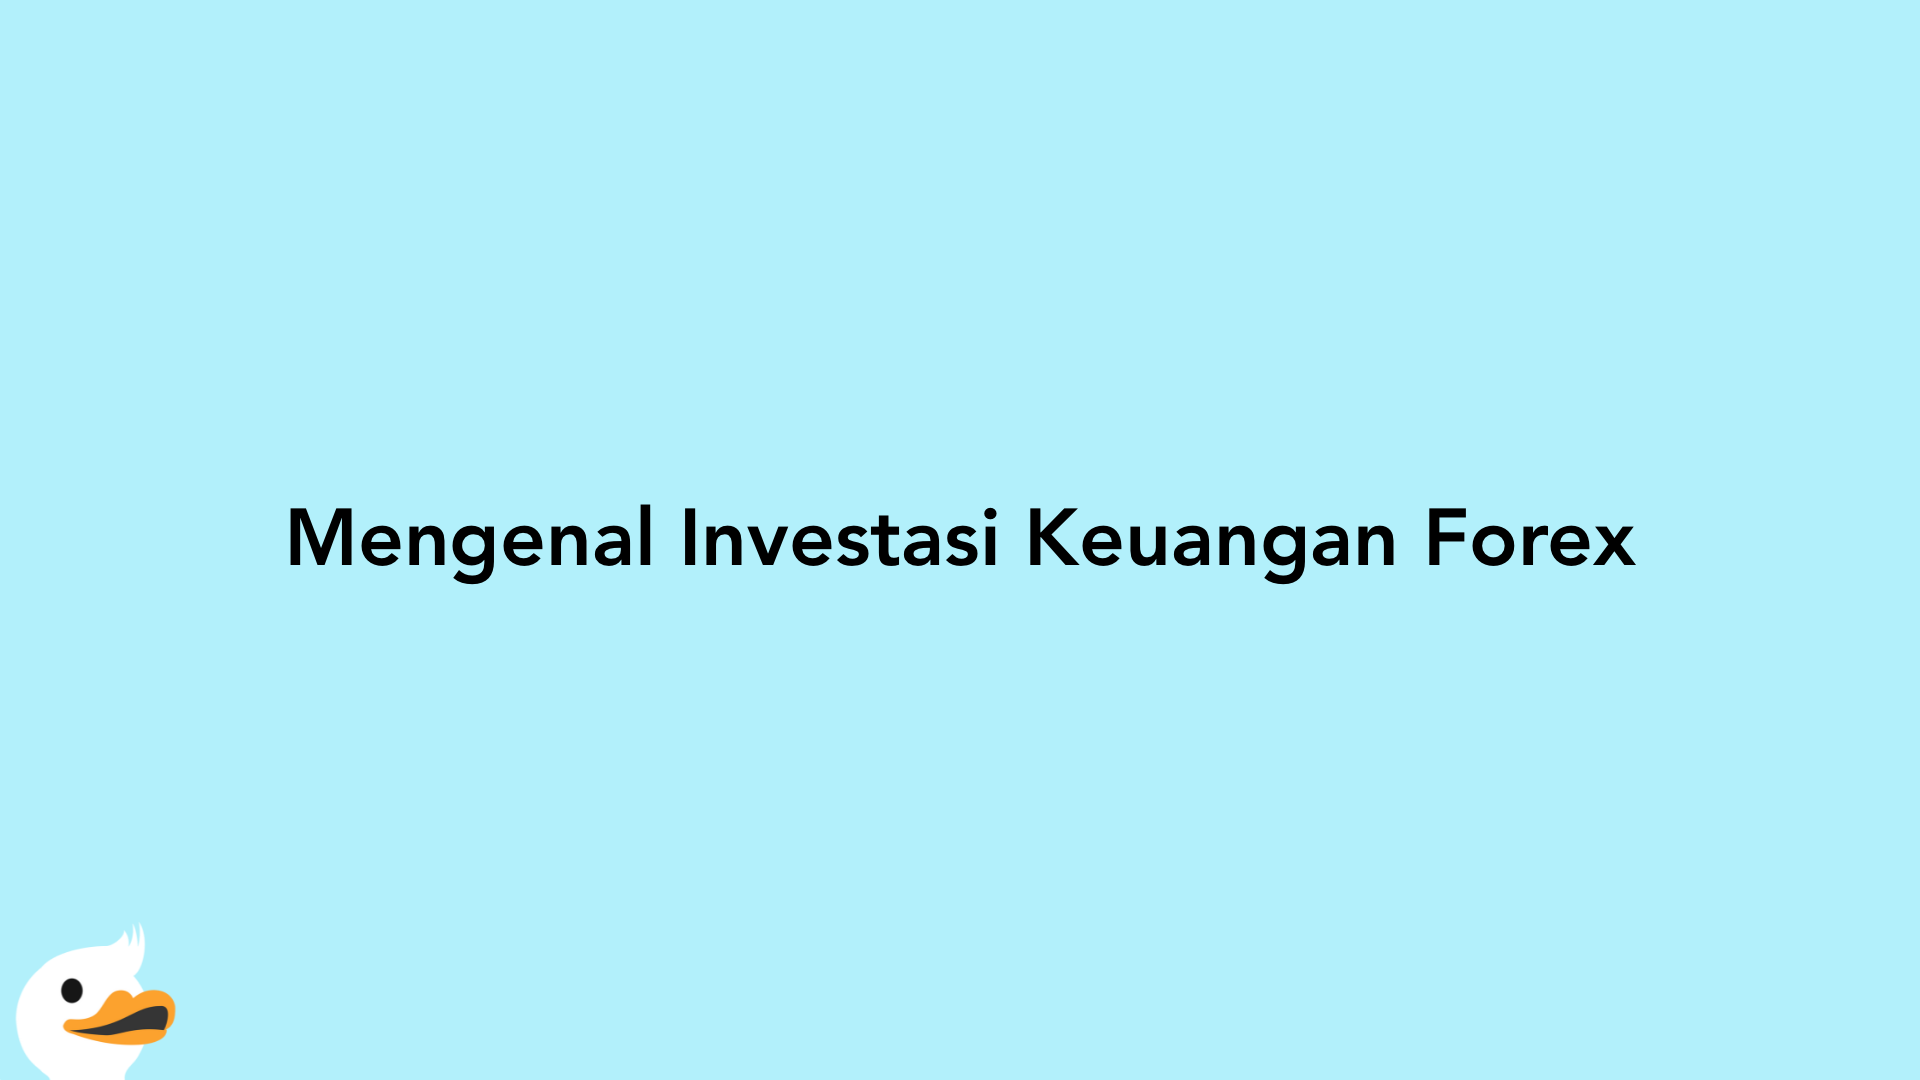 Mengenal Investasi Keuangan Forex